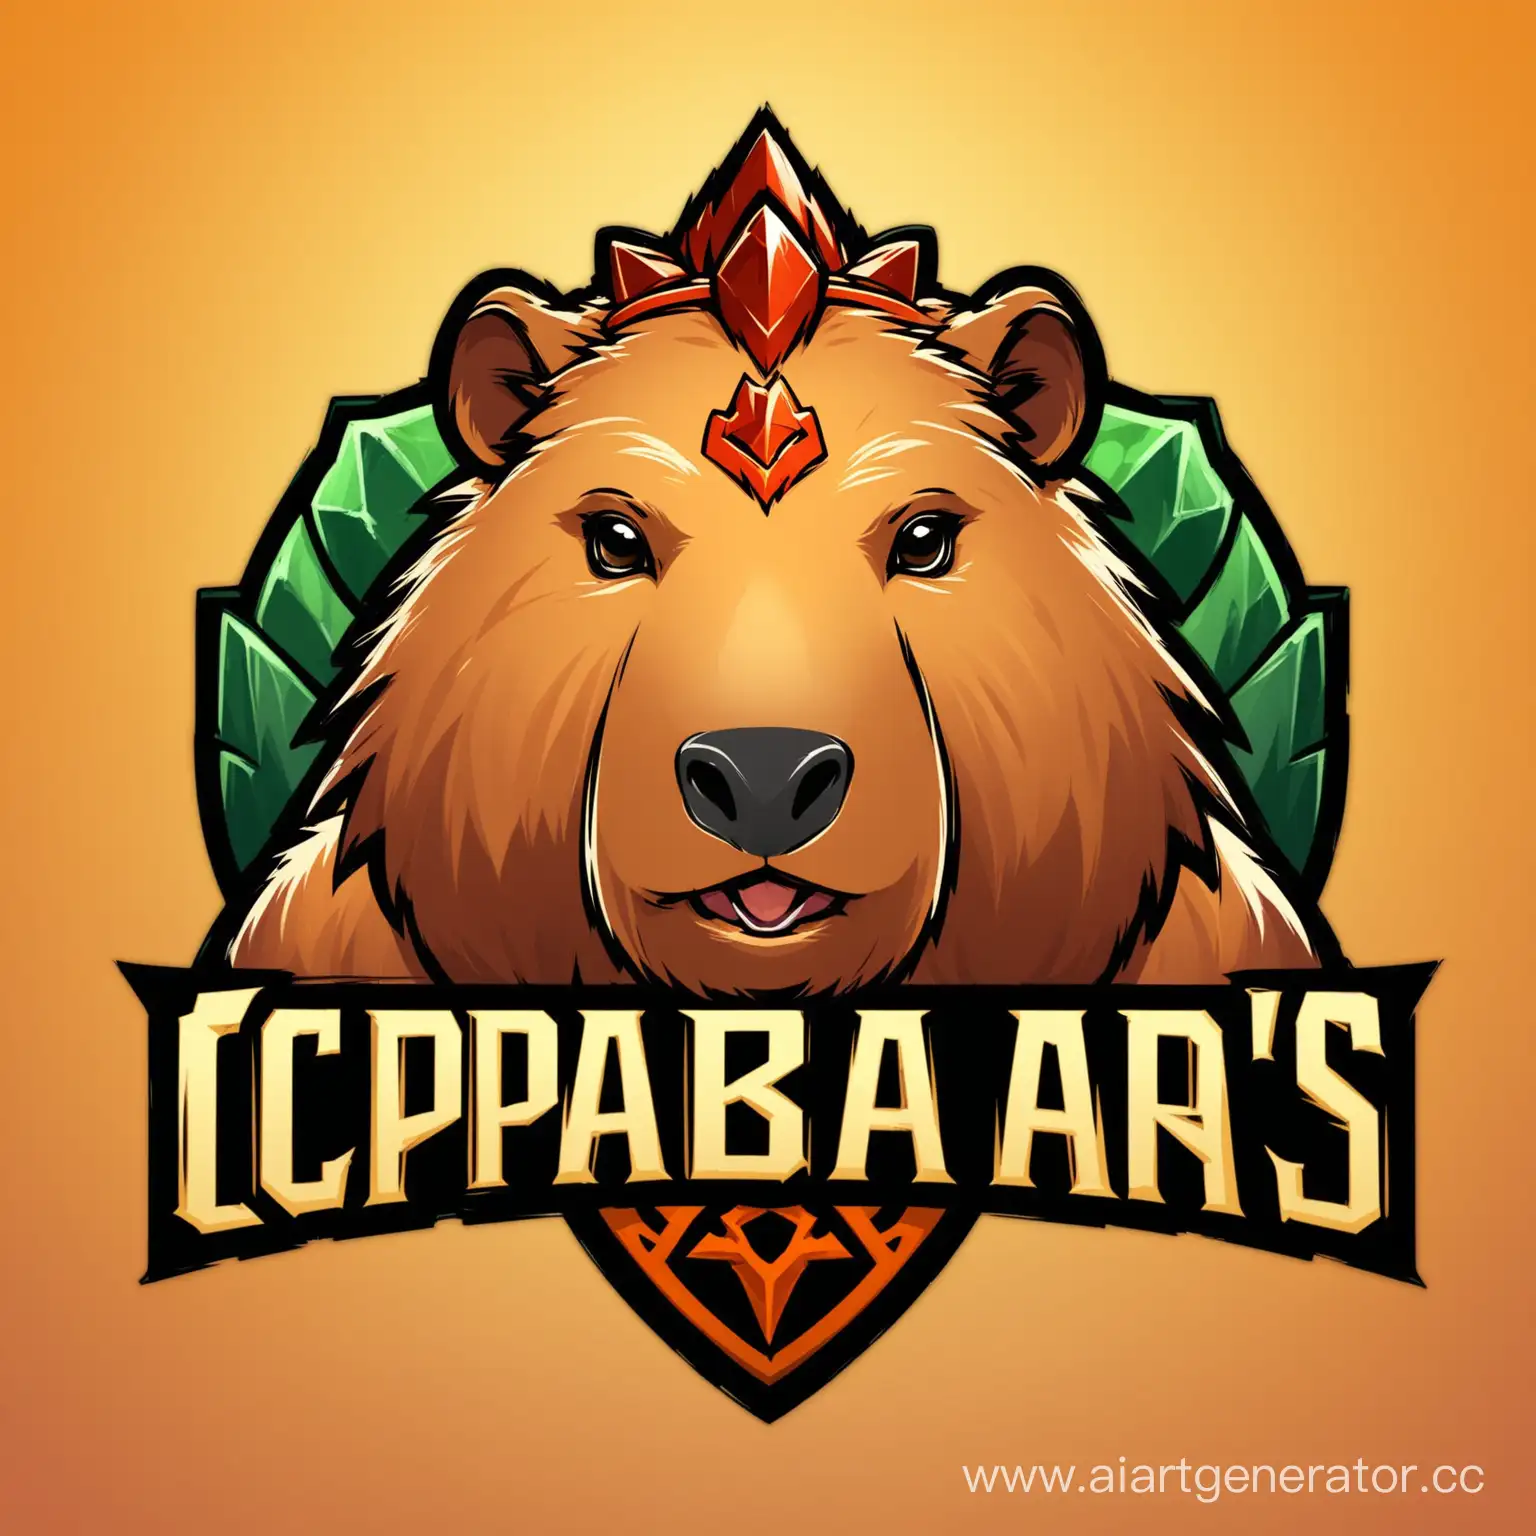 Capybarathemed-Dota-2-Team-Logo-Adorable-Mascots-Conquer-the-Arena